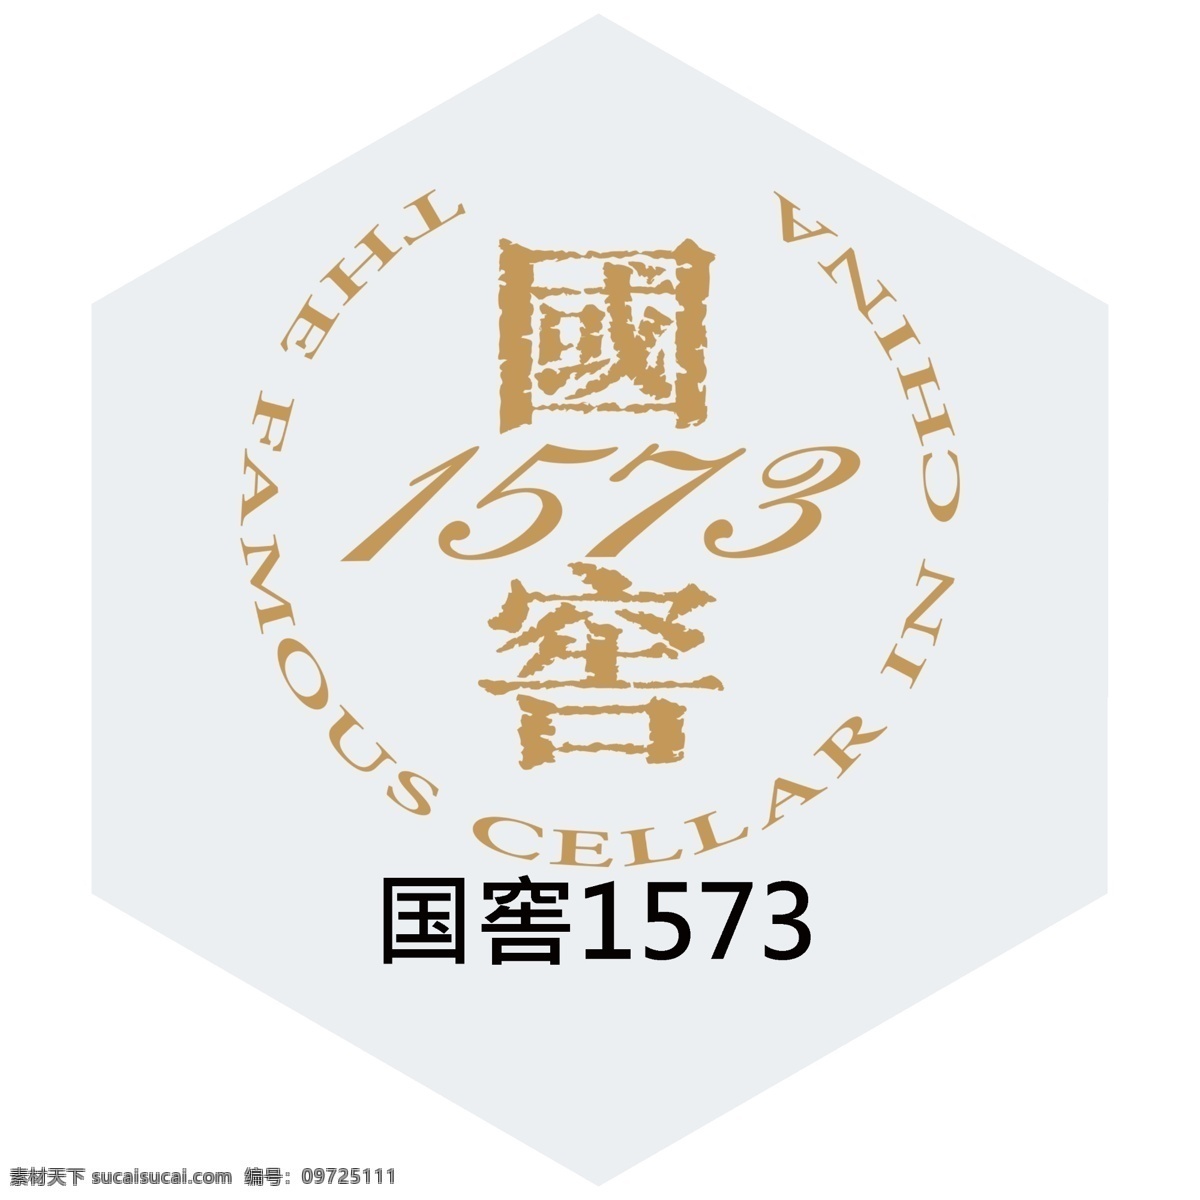 国 窖 1573 国窖酒 泸州老窖 国窖1573 白酒 浓香酒 啤酒logo logo设计